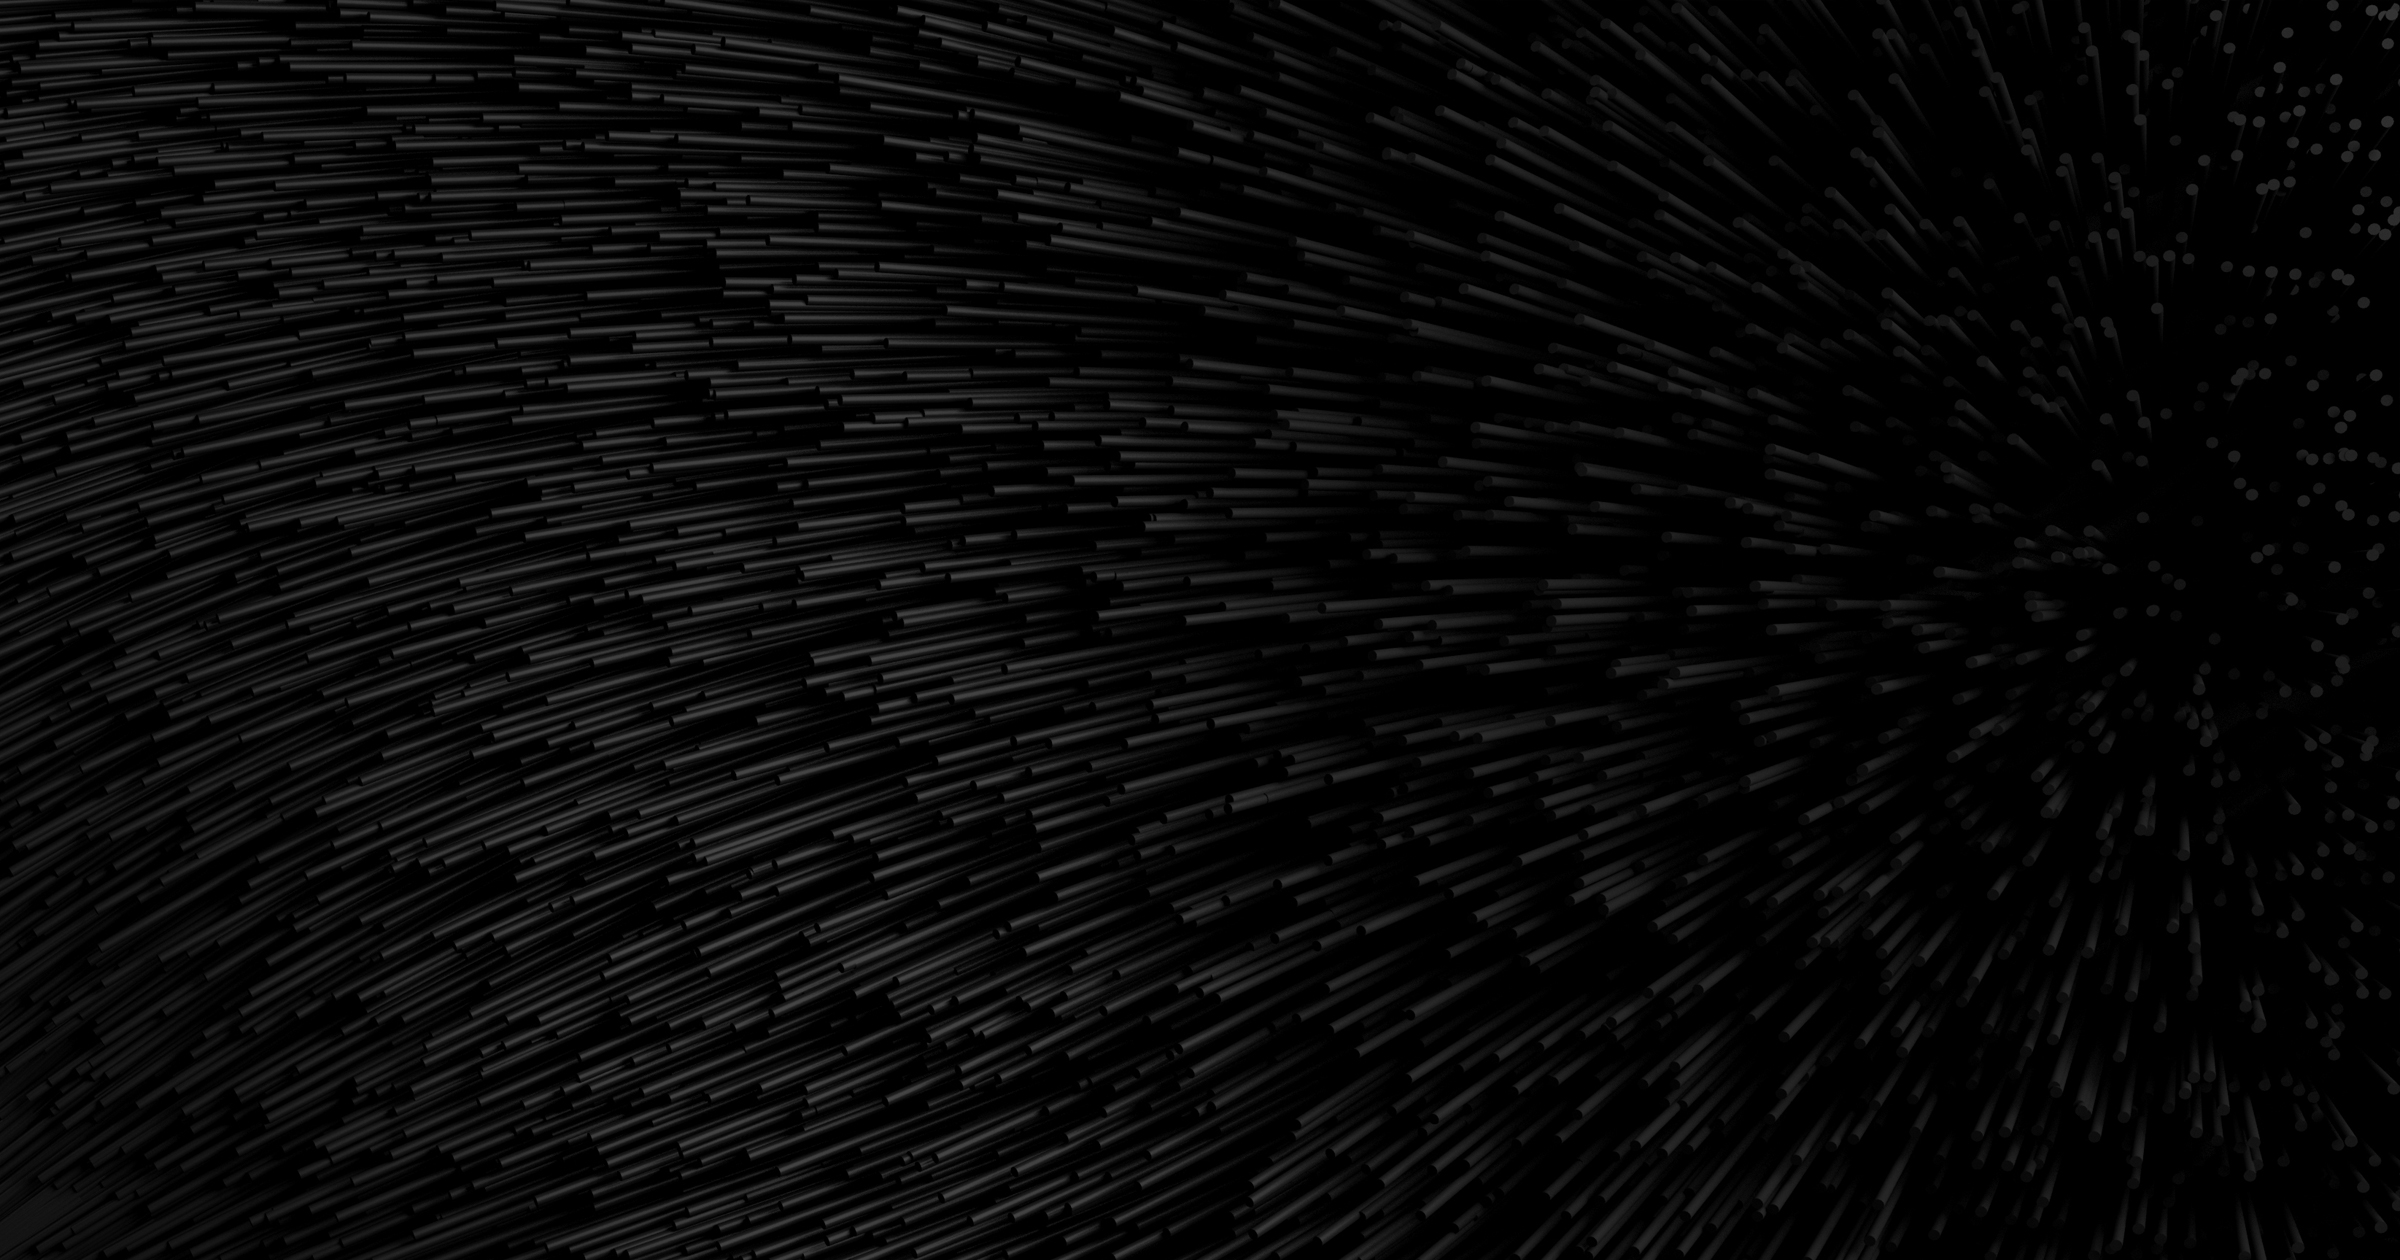 Bộ sưu tập hình nền ĐEN của Jean Marc Denis sẽ đưa bạn vào thế giới đen đủi, bí ẩn và thú vị. Khám phá ngay để tìm kiếm nét đặc trưng cho màn hình của bạn.